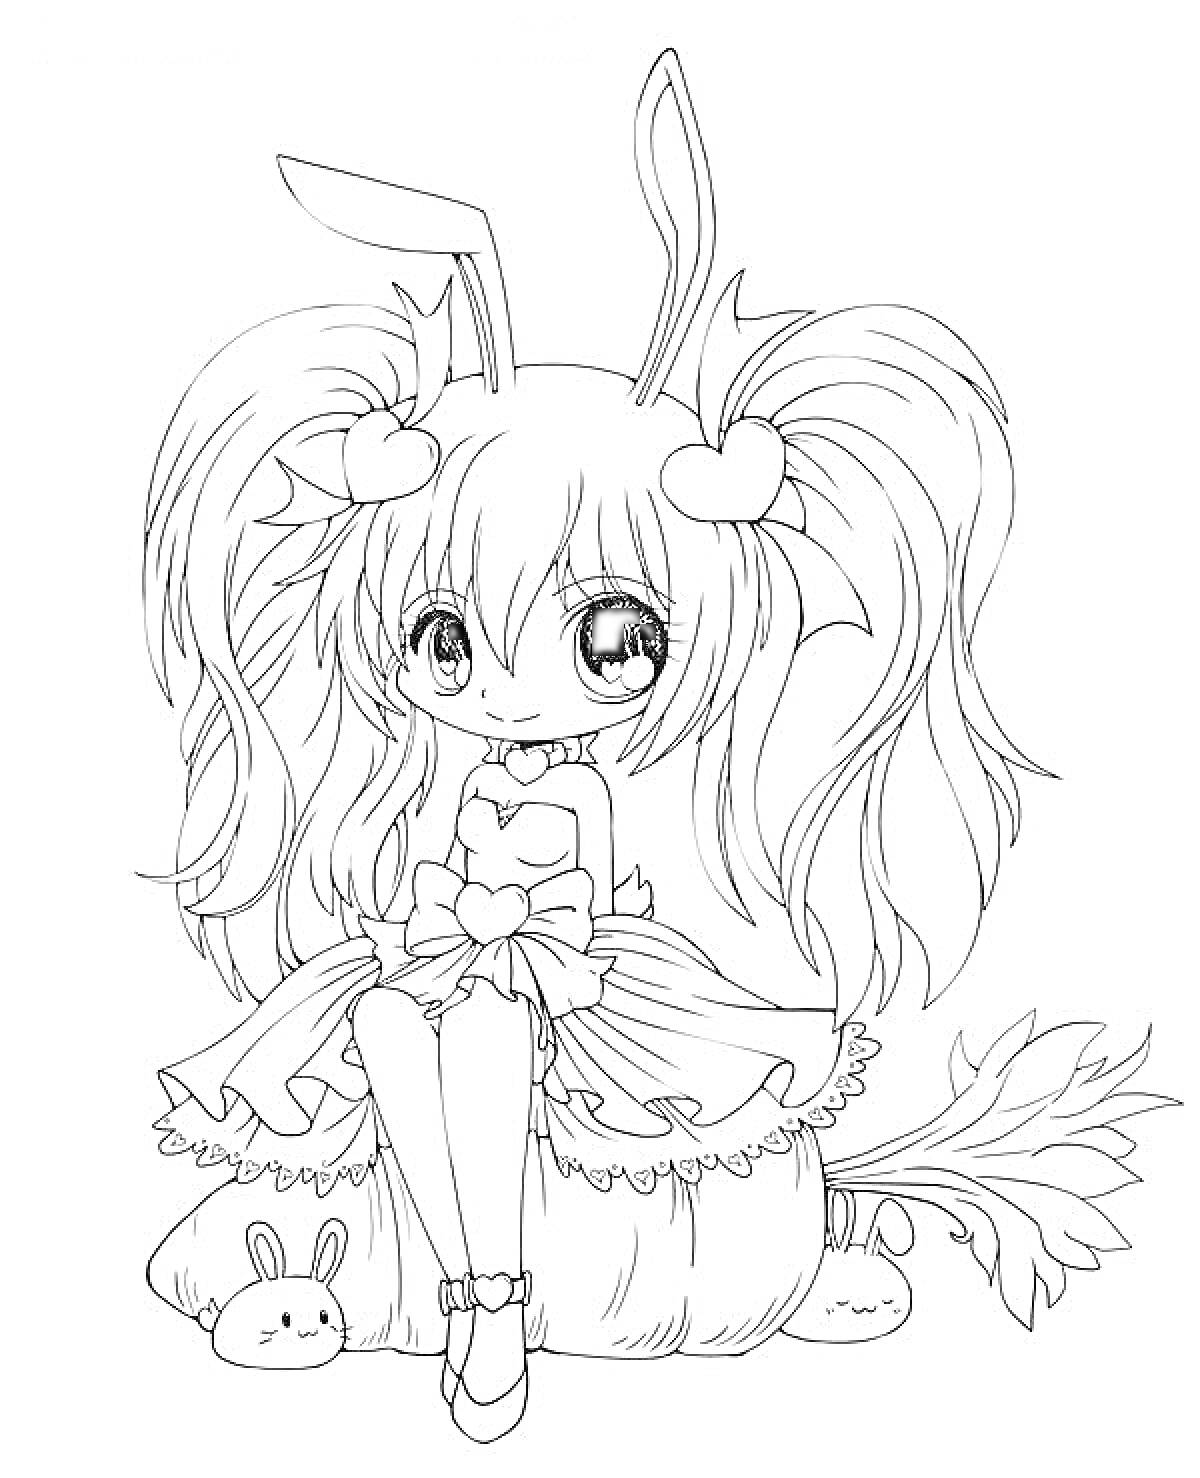 Раскраска Девушка аниме с длинными волосами, ушками-кроликами, сердечками, в платье с бантами, сидящая на подушке с хвостом, рядом с зайчиками